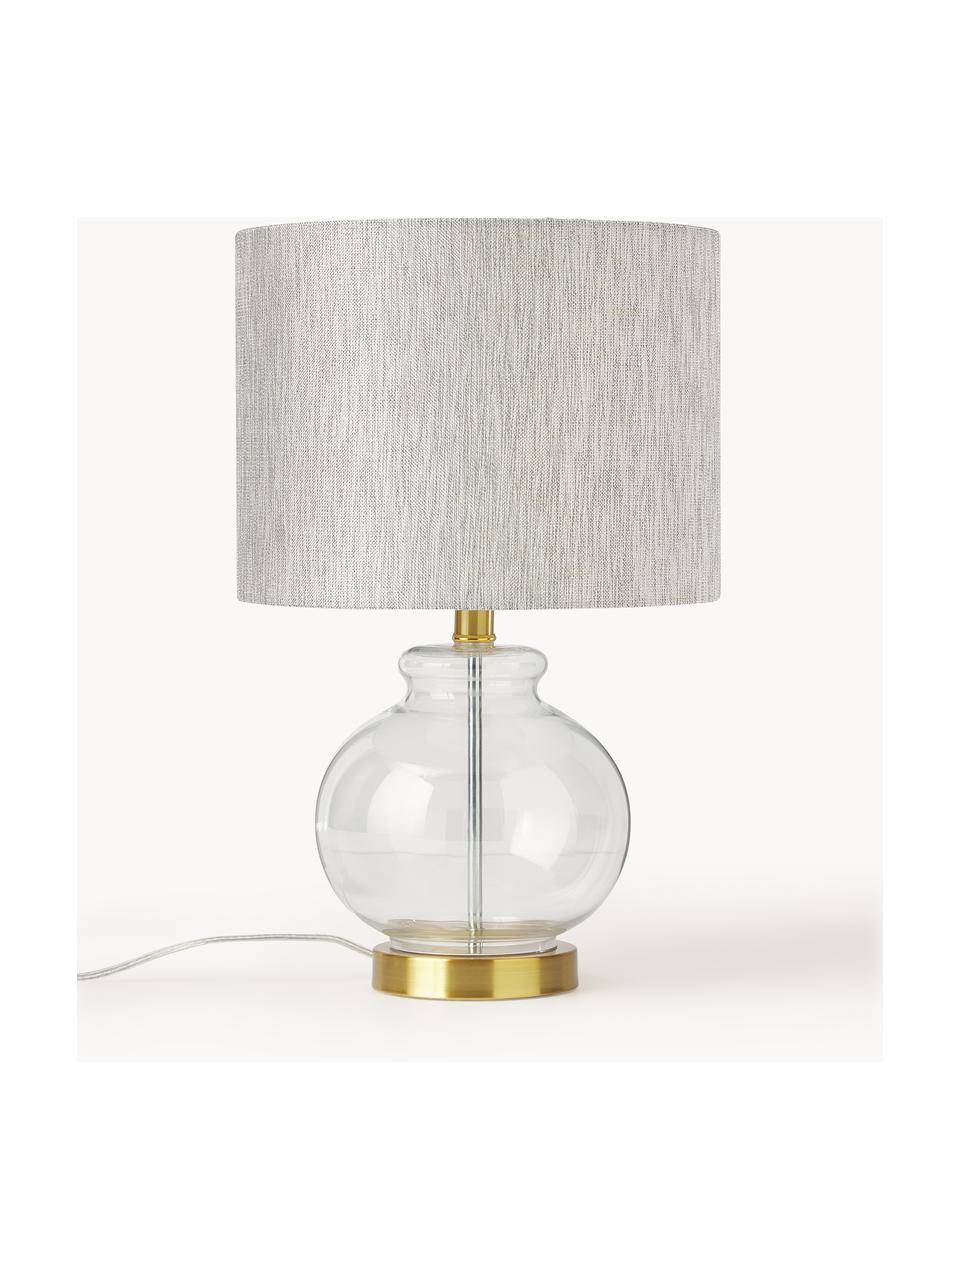 Tischlampe Natty mit Glasfuß, Lampenschirm: Textil, Lampenfuß: Glas, Sockel: Messing, gebürstet, Beige, Transparent, Ø 31 x H 48 cm